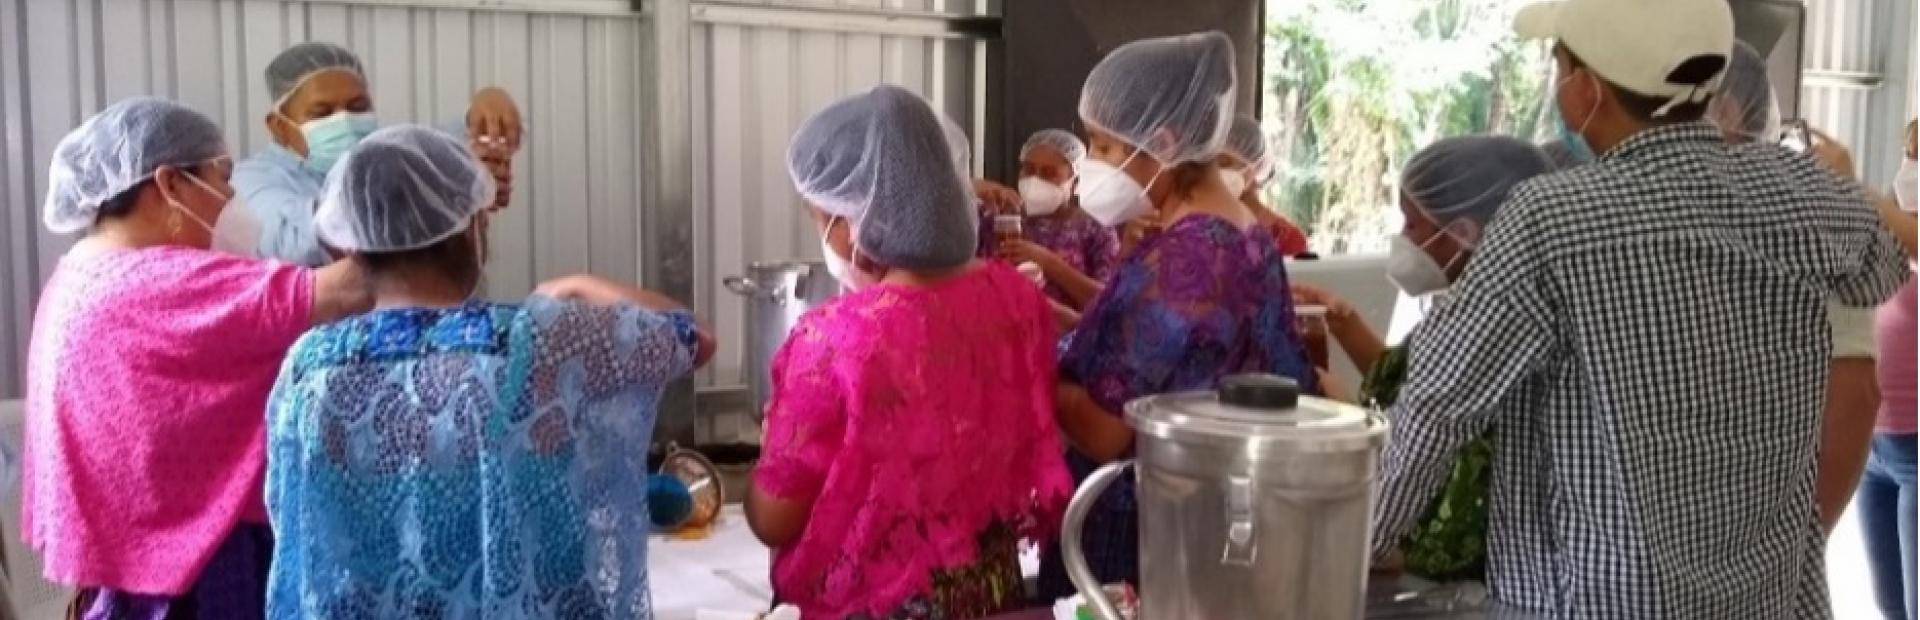 Esposas y familiares de productores de chile cahabonero obtienen conocimientos para elaborar sala Dip a base de chile cahabonero